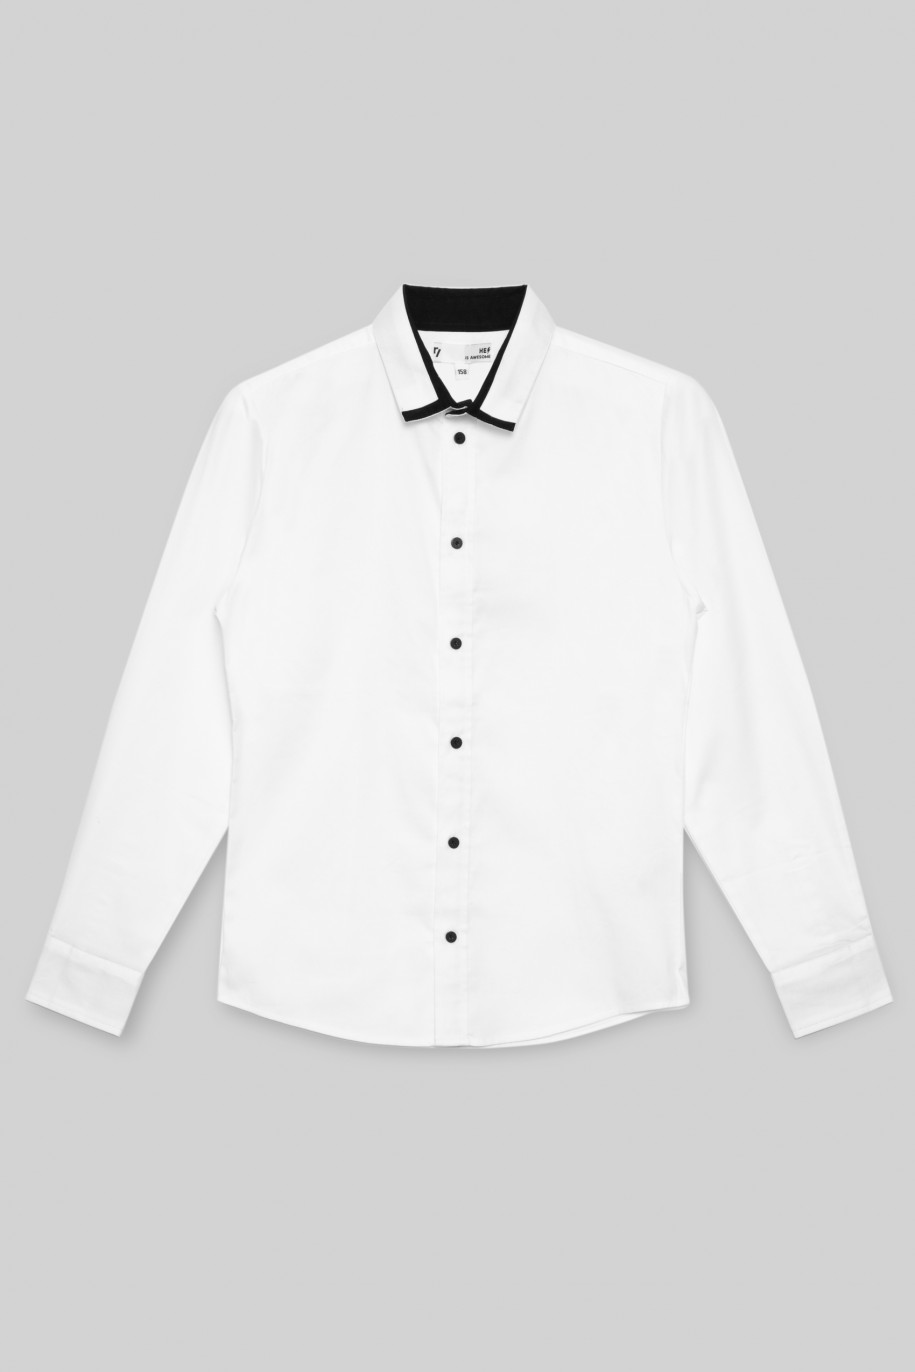 Biała elegancka koszula dla chłopaka - 32681